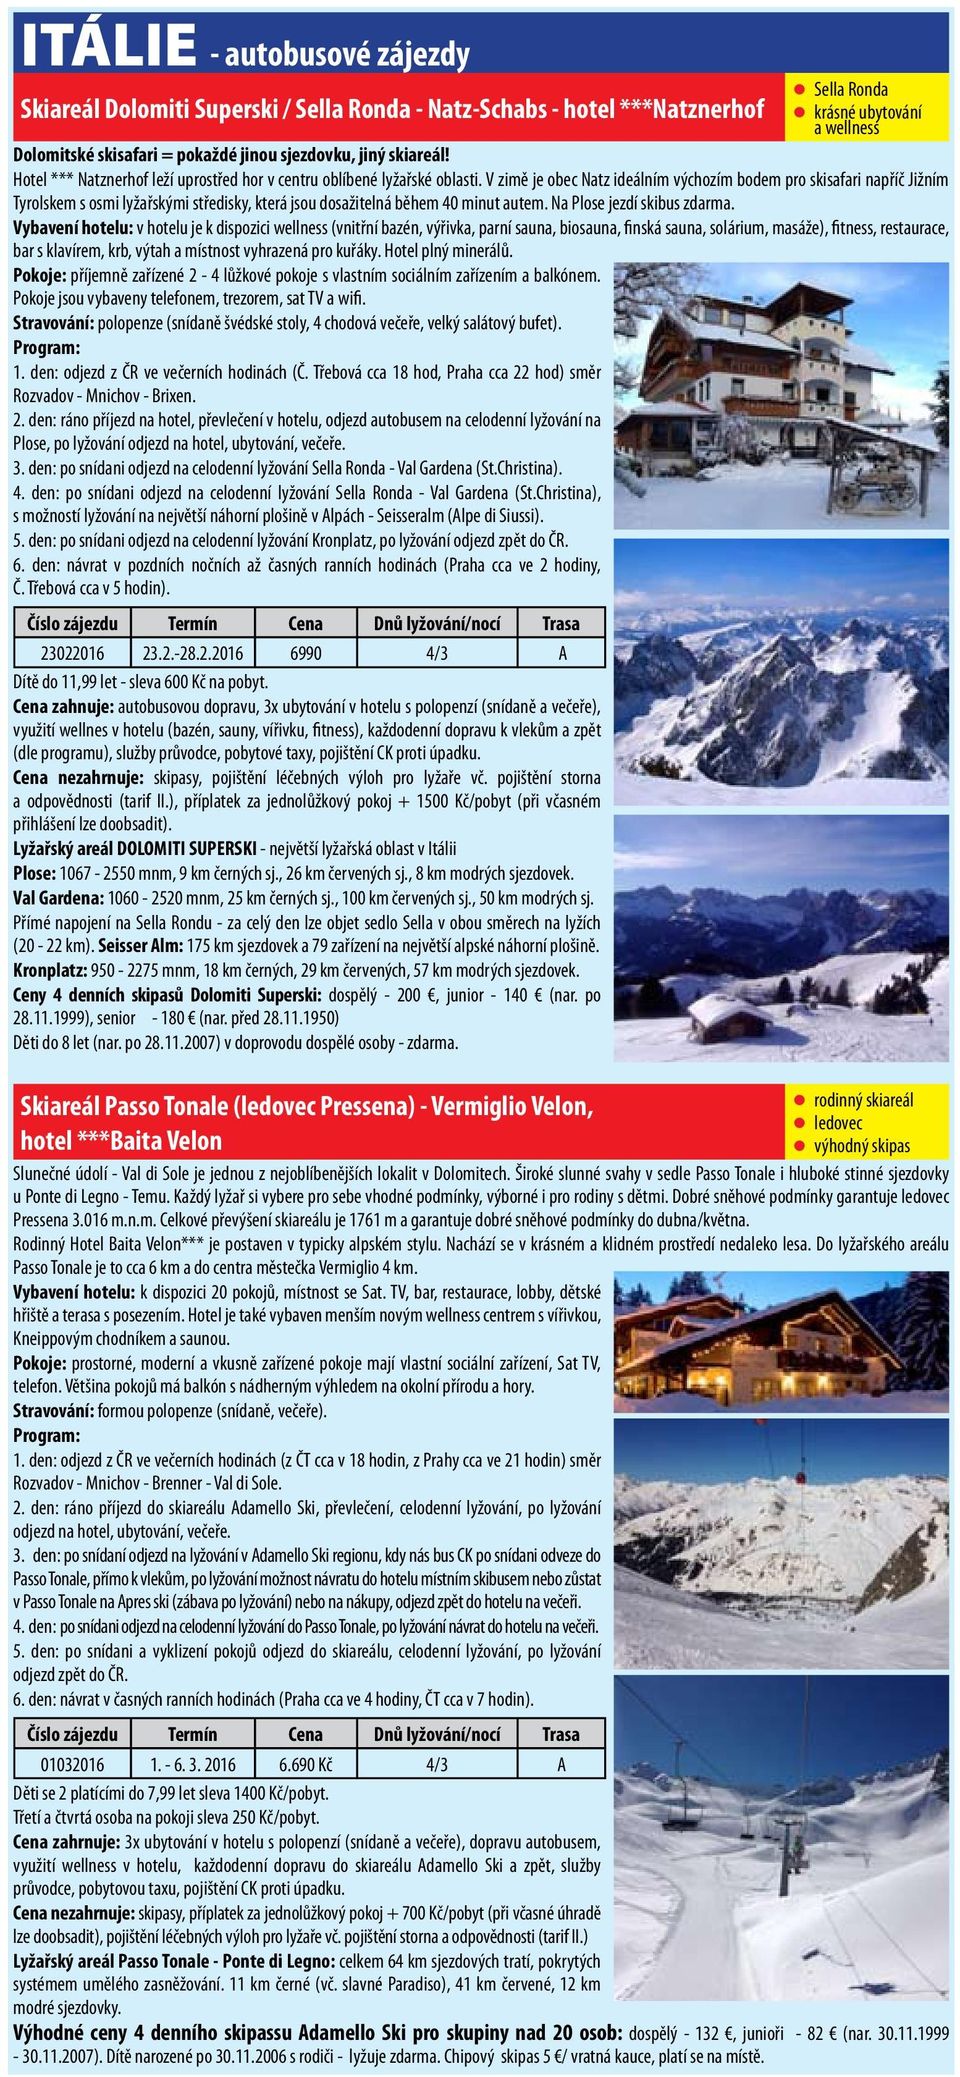 V zimě je obec Natz ideálním výchozím bodem pro skisafari napříč Jižním Tyrolskem s osmi lyžařskými středisky, která jsou dosažitelná během 40 minut autem. Na Plose jezdí skibus zdarma.